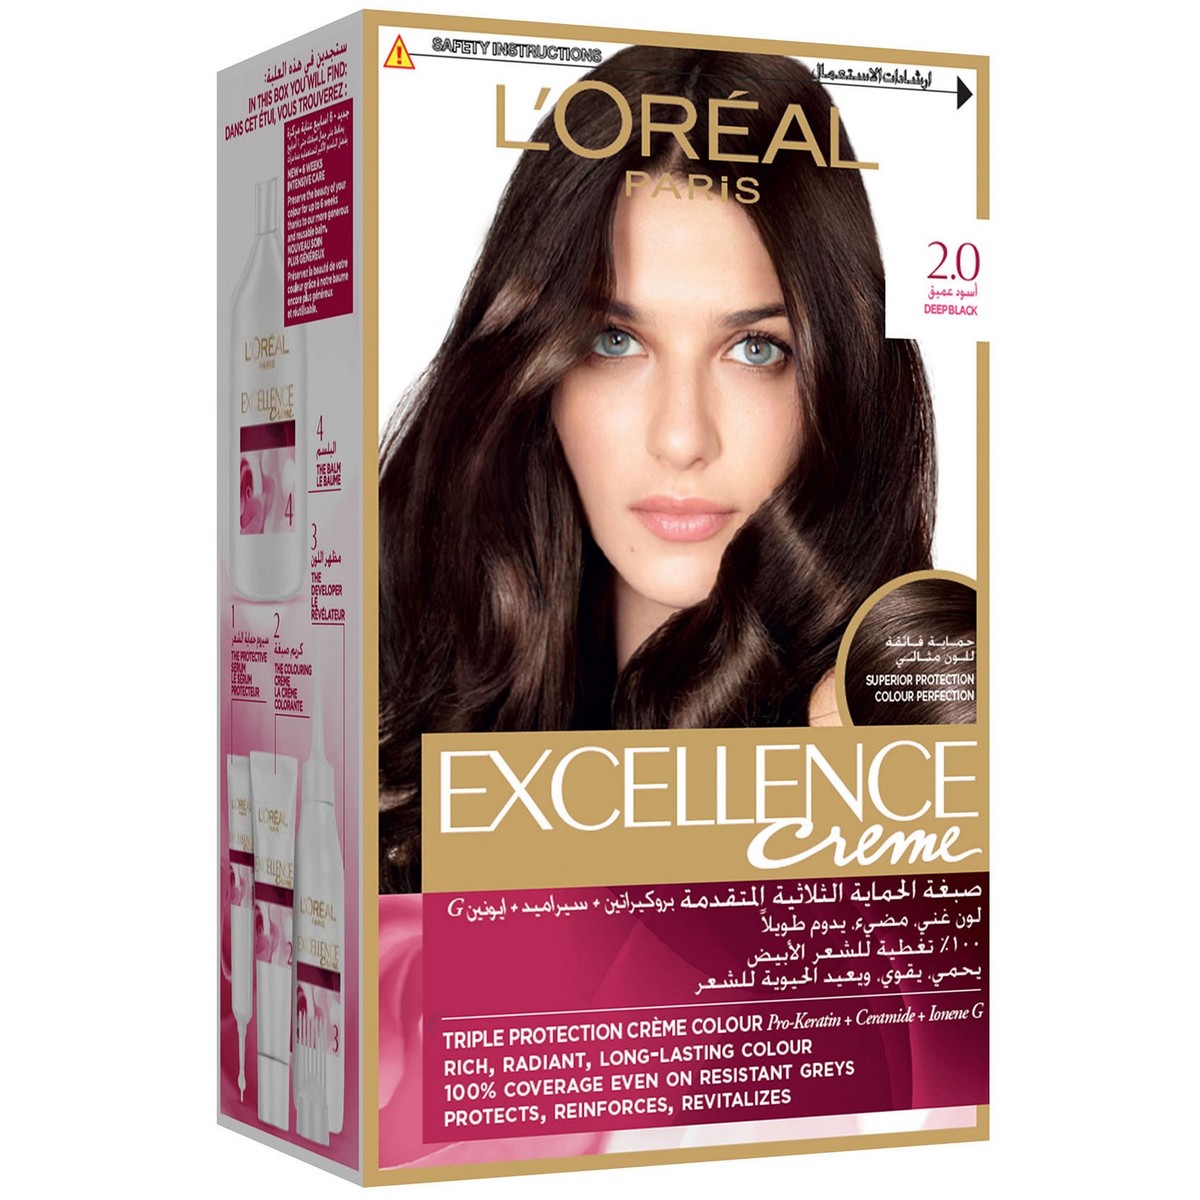 L'Oreal Paris Excellence Creme 2.0 Deep Black Hair Color 1 Packet ...